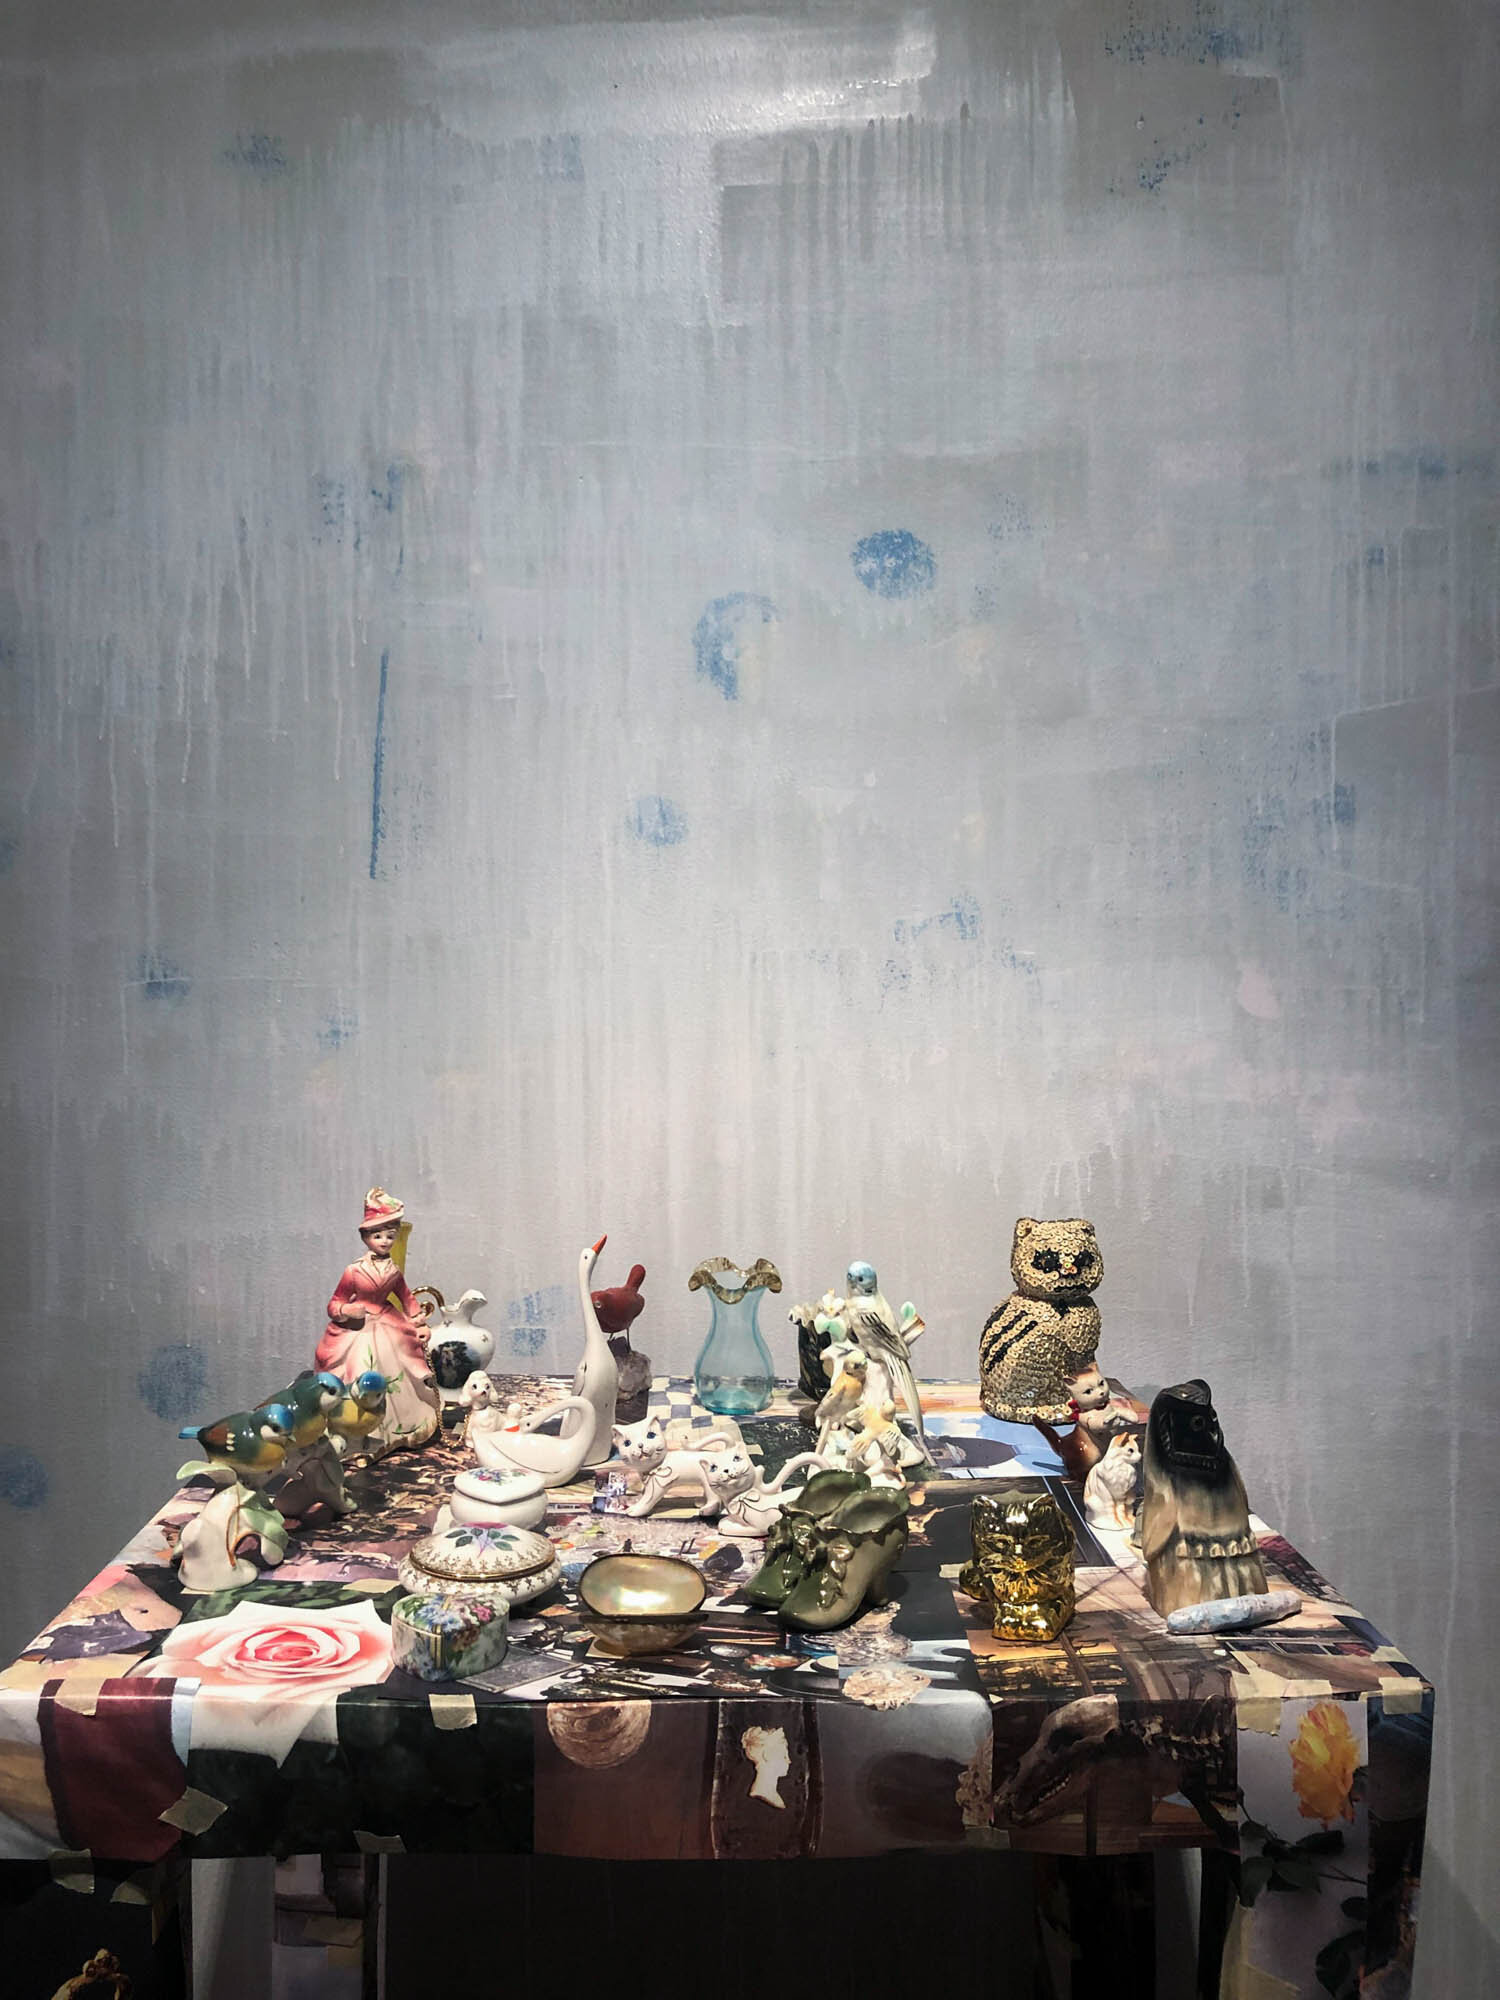  – – – – – – – – – – (2019) Installasjon med funne objekter av Tricia Middleton. Foto: Hilde Sørstrøm 